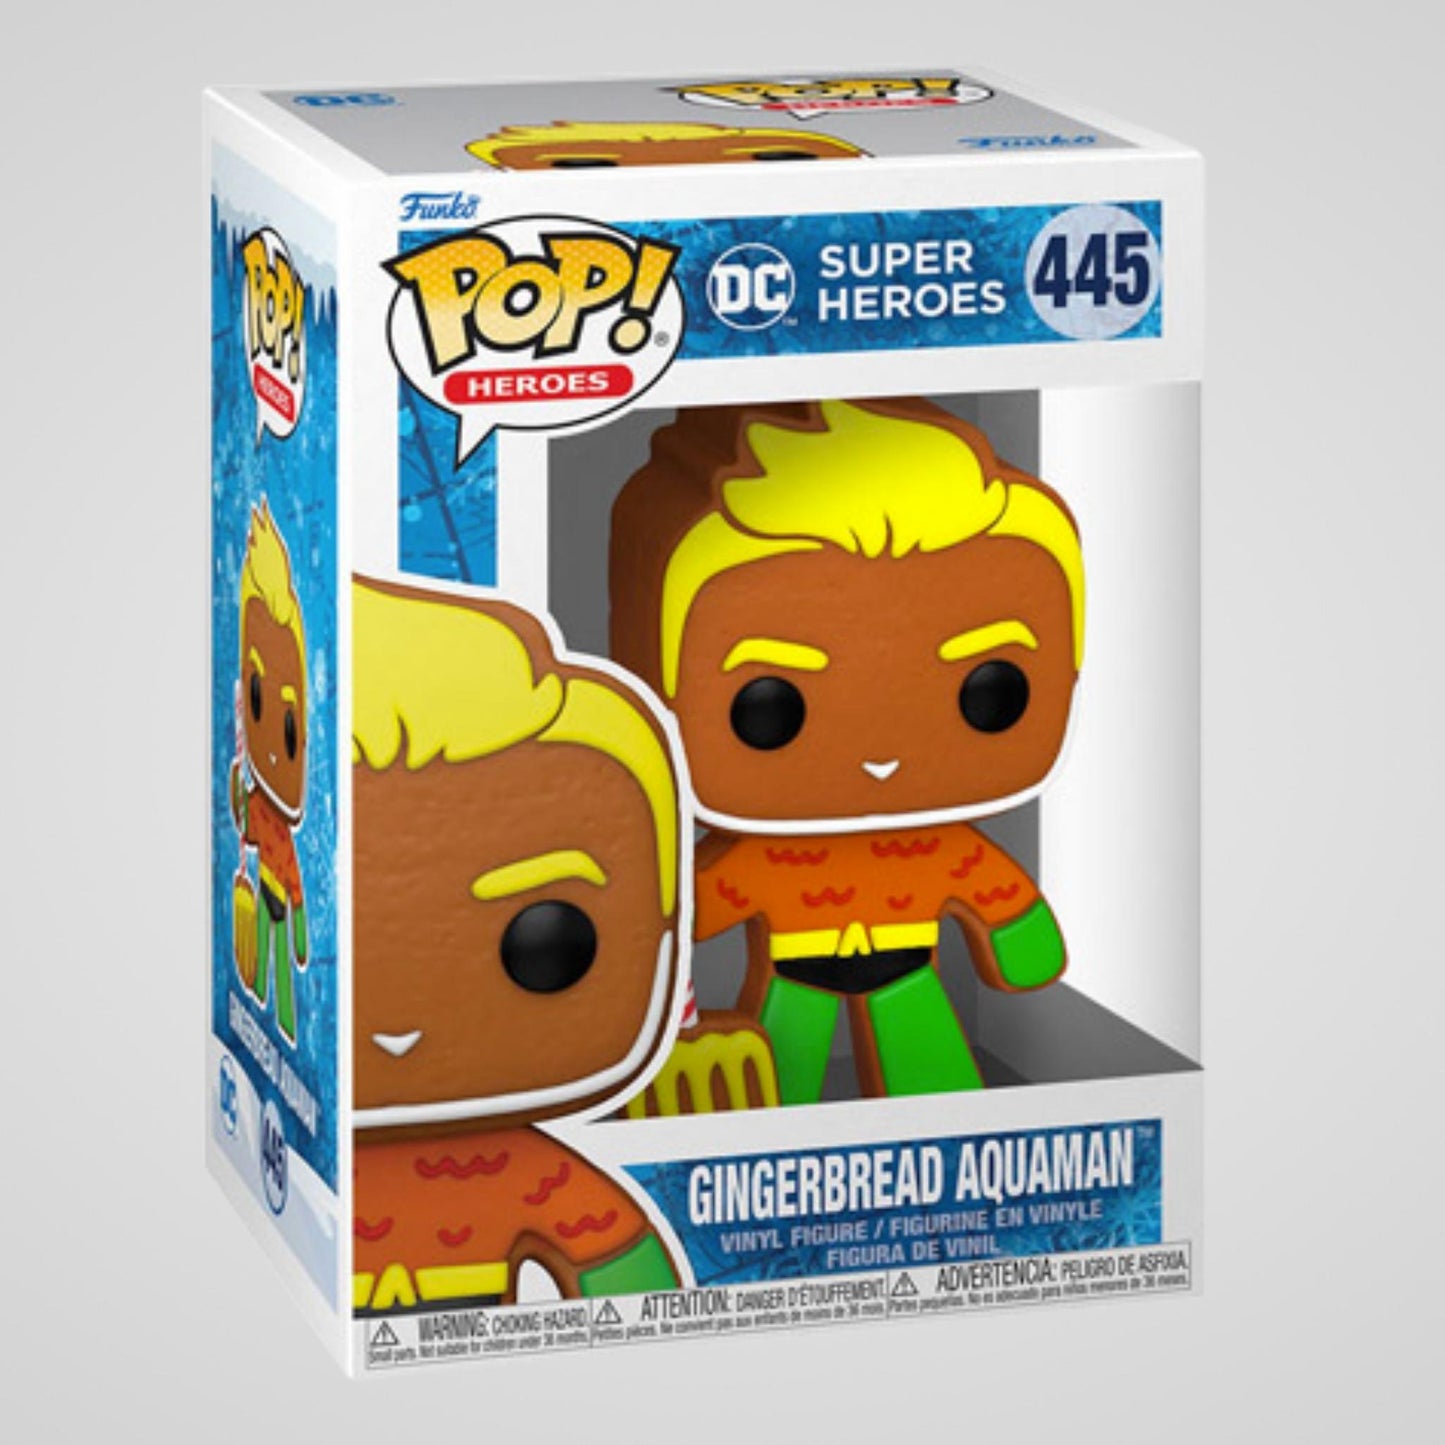 Gingerbread Aquaman (DC Comics) Holiday Funko Pop! #445